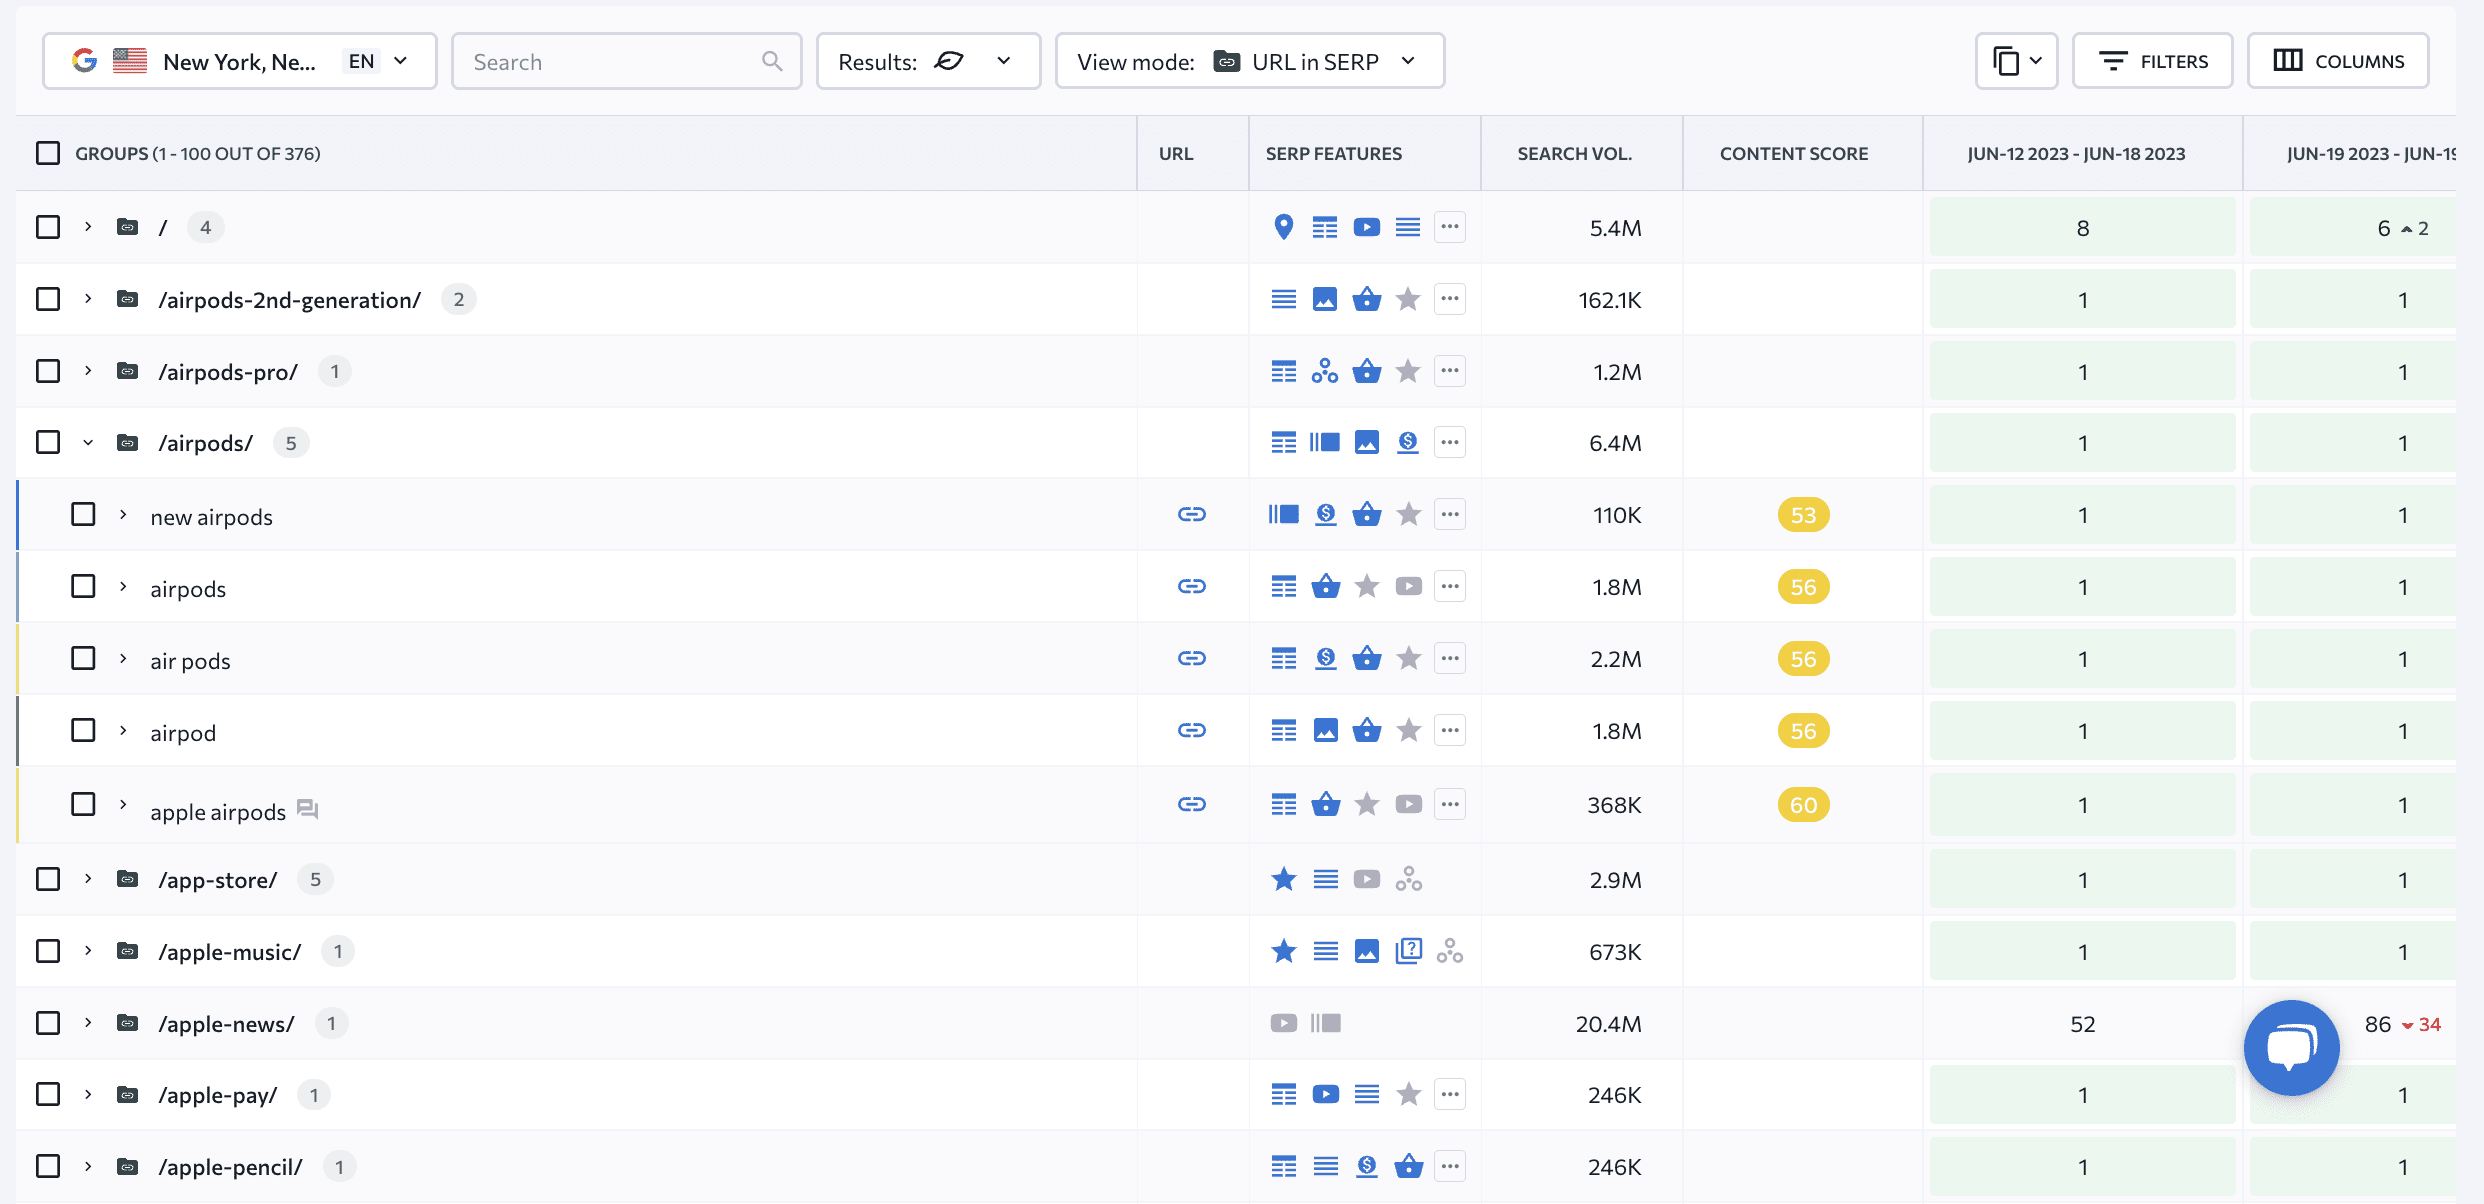 Rankings by URLs